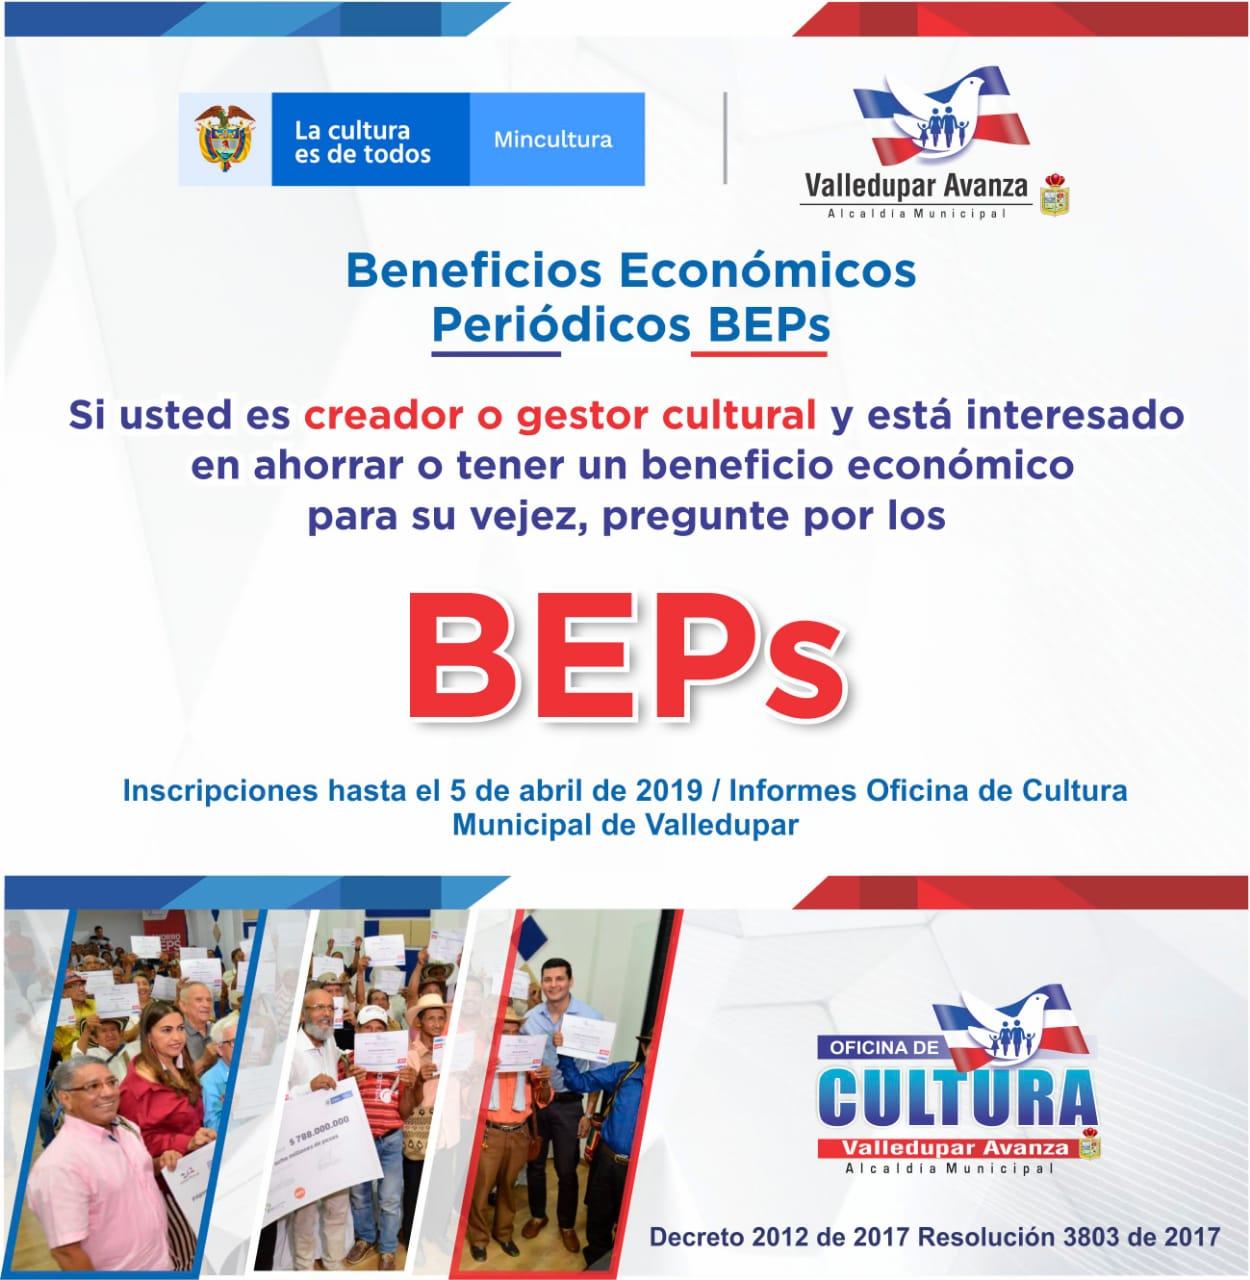 Nueva convocatoria para adjudicar Beneficios Económicos Periódicos, BEPS